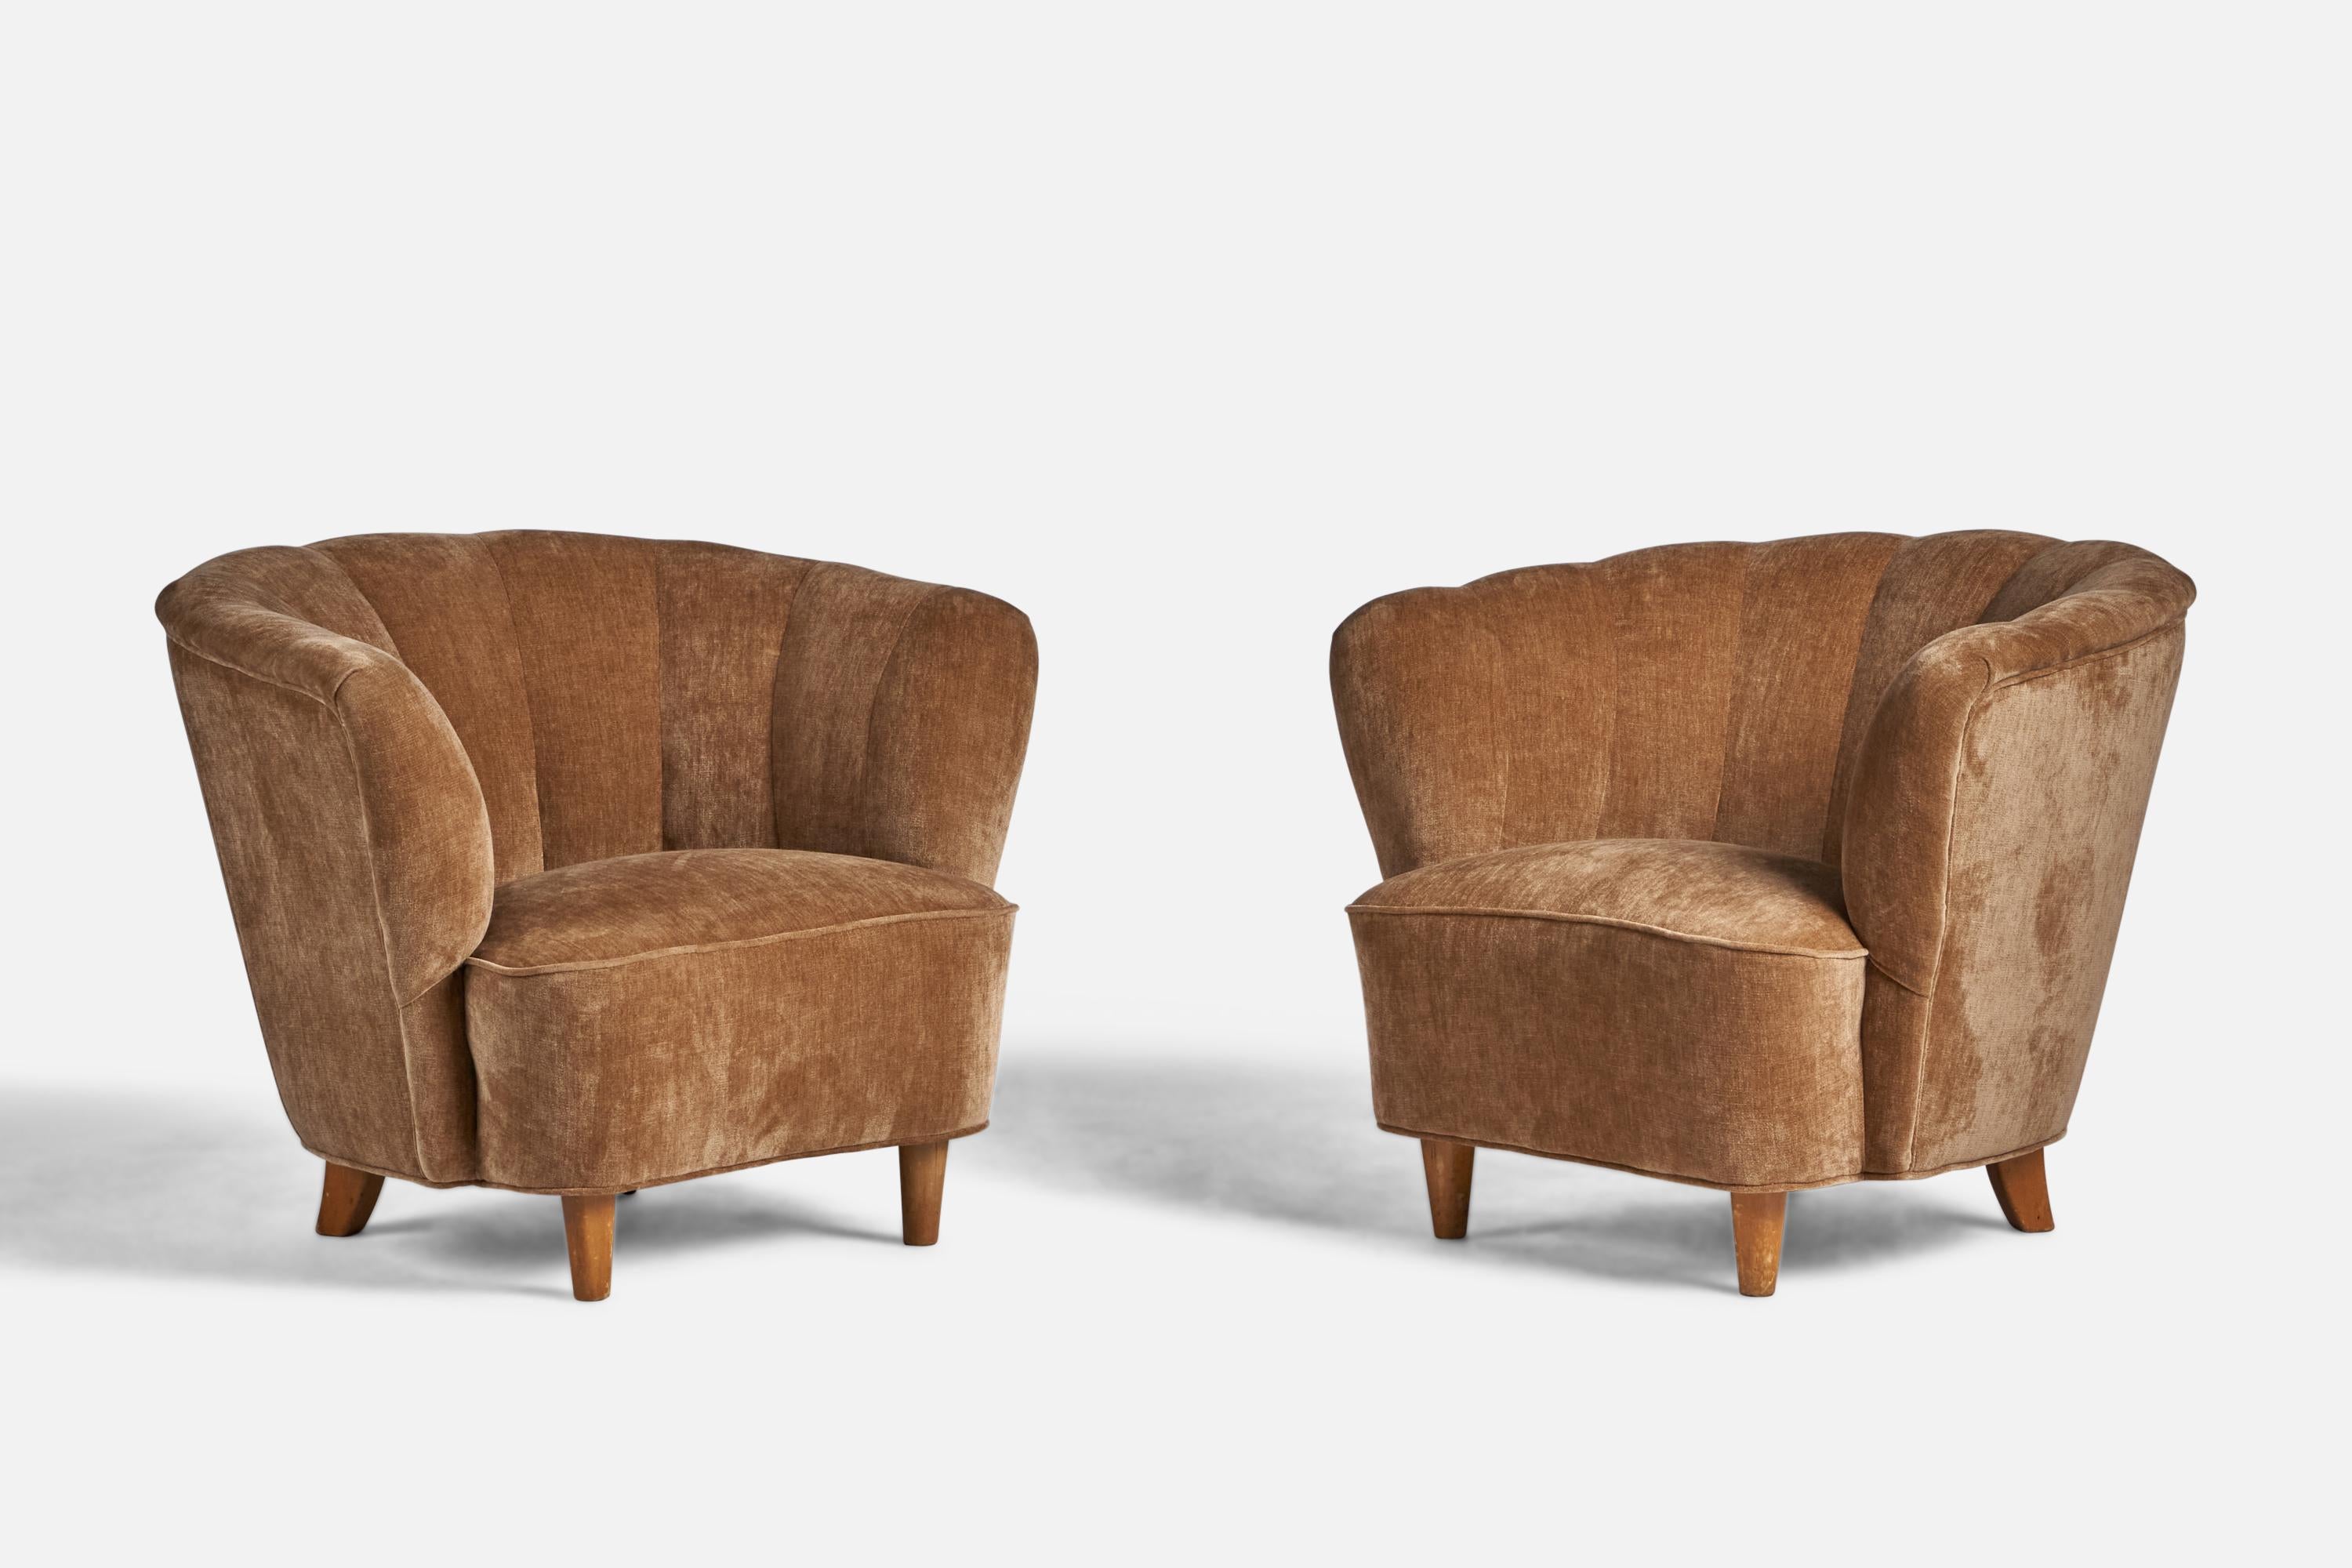 Paire de chaises longues en tissu de velours beige et en bouleau, conçues et produites en Finlande dans les années 1940.
Hauteur du siège : 14.5